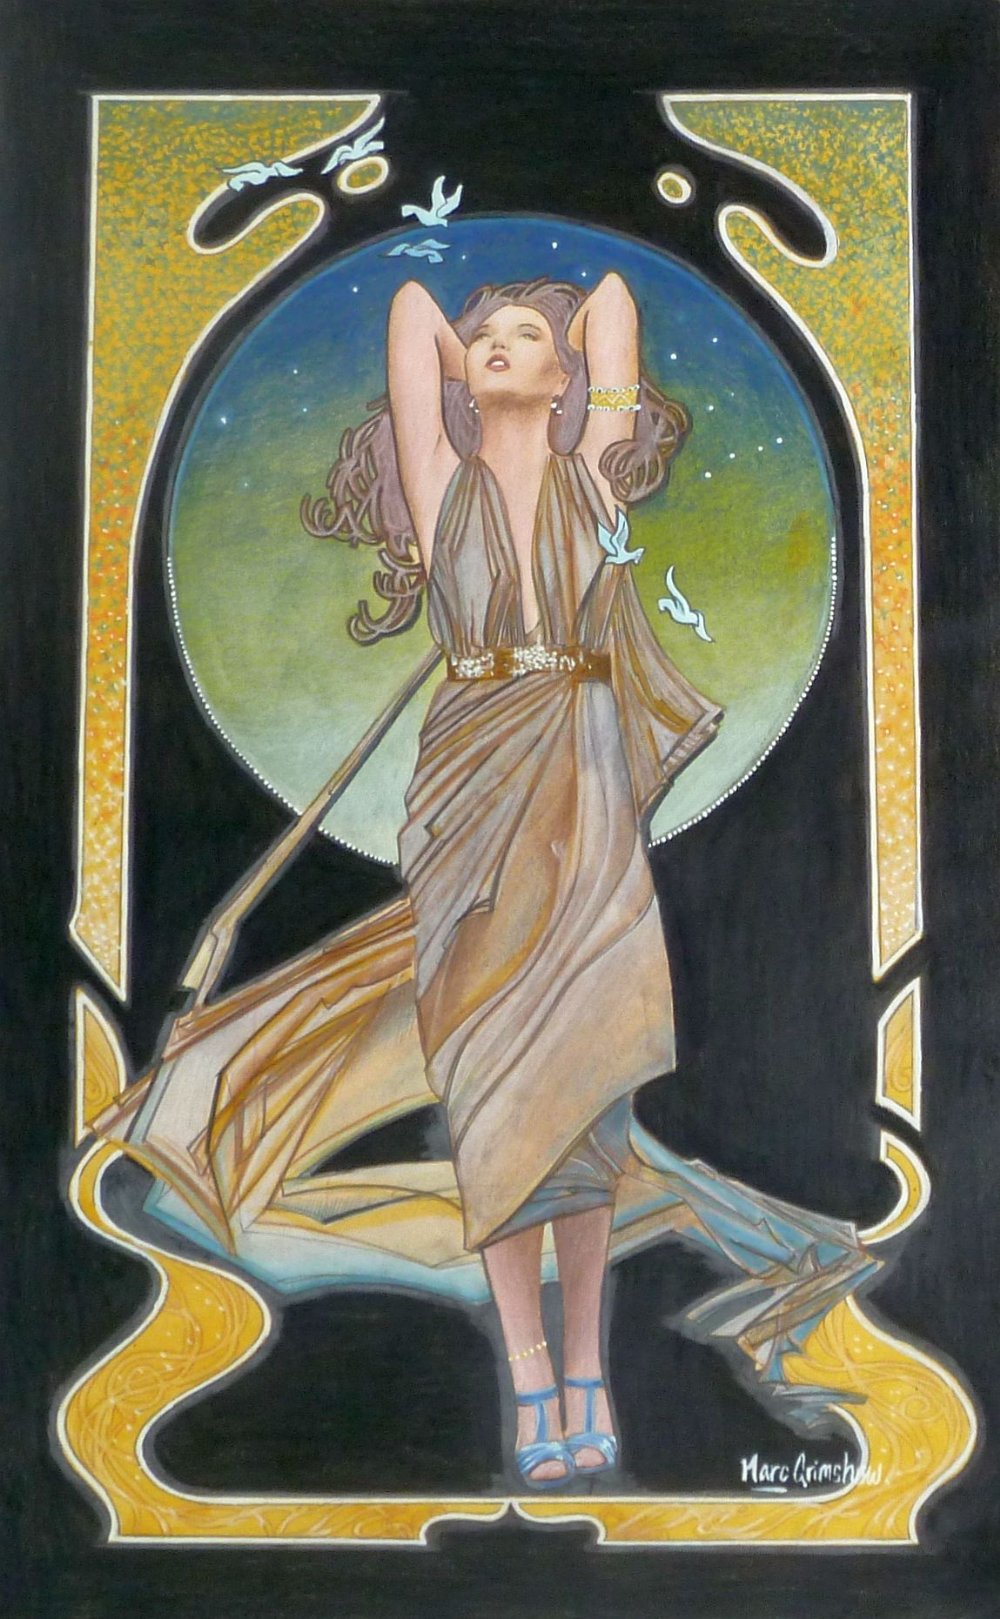 ?MARC GRIMSHAW (b. 1957) MIXED MEDIA, A PAIR Each a glamorous female figure, in an Art Nouveau